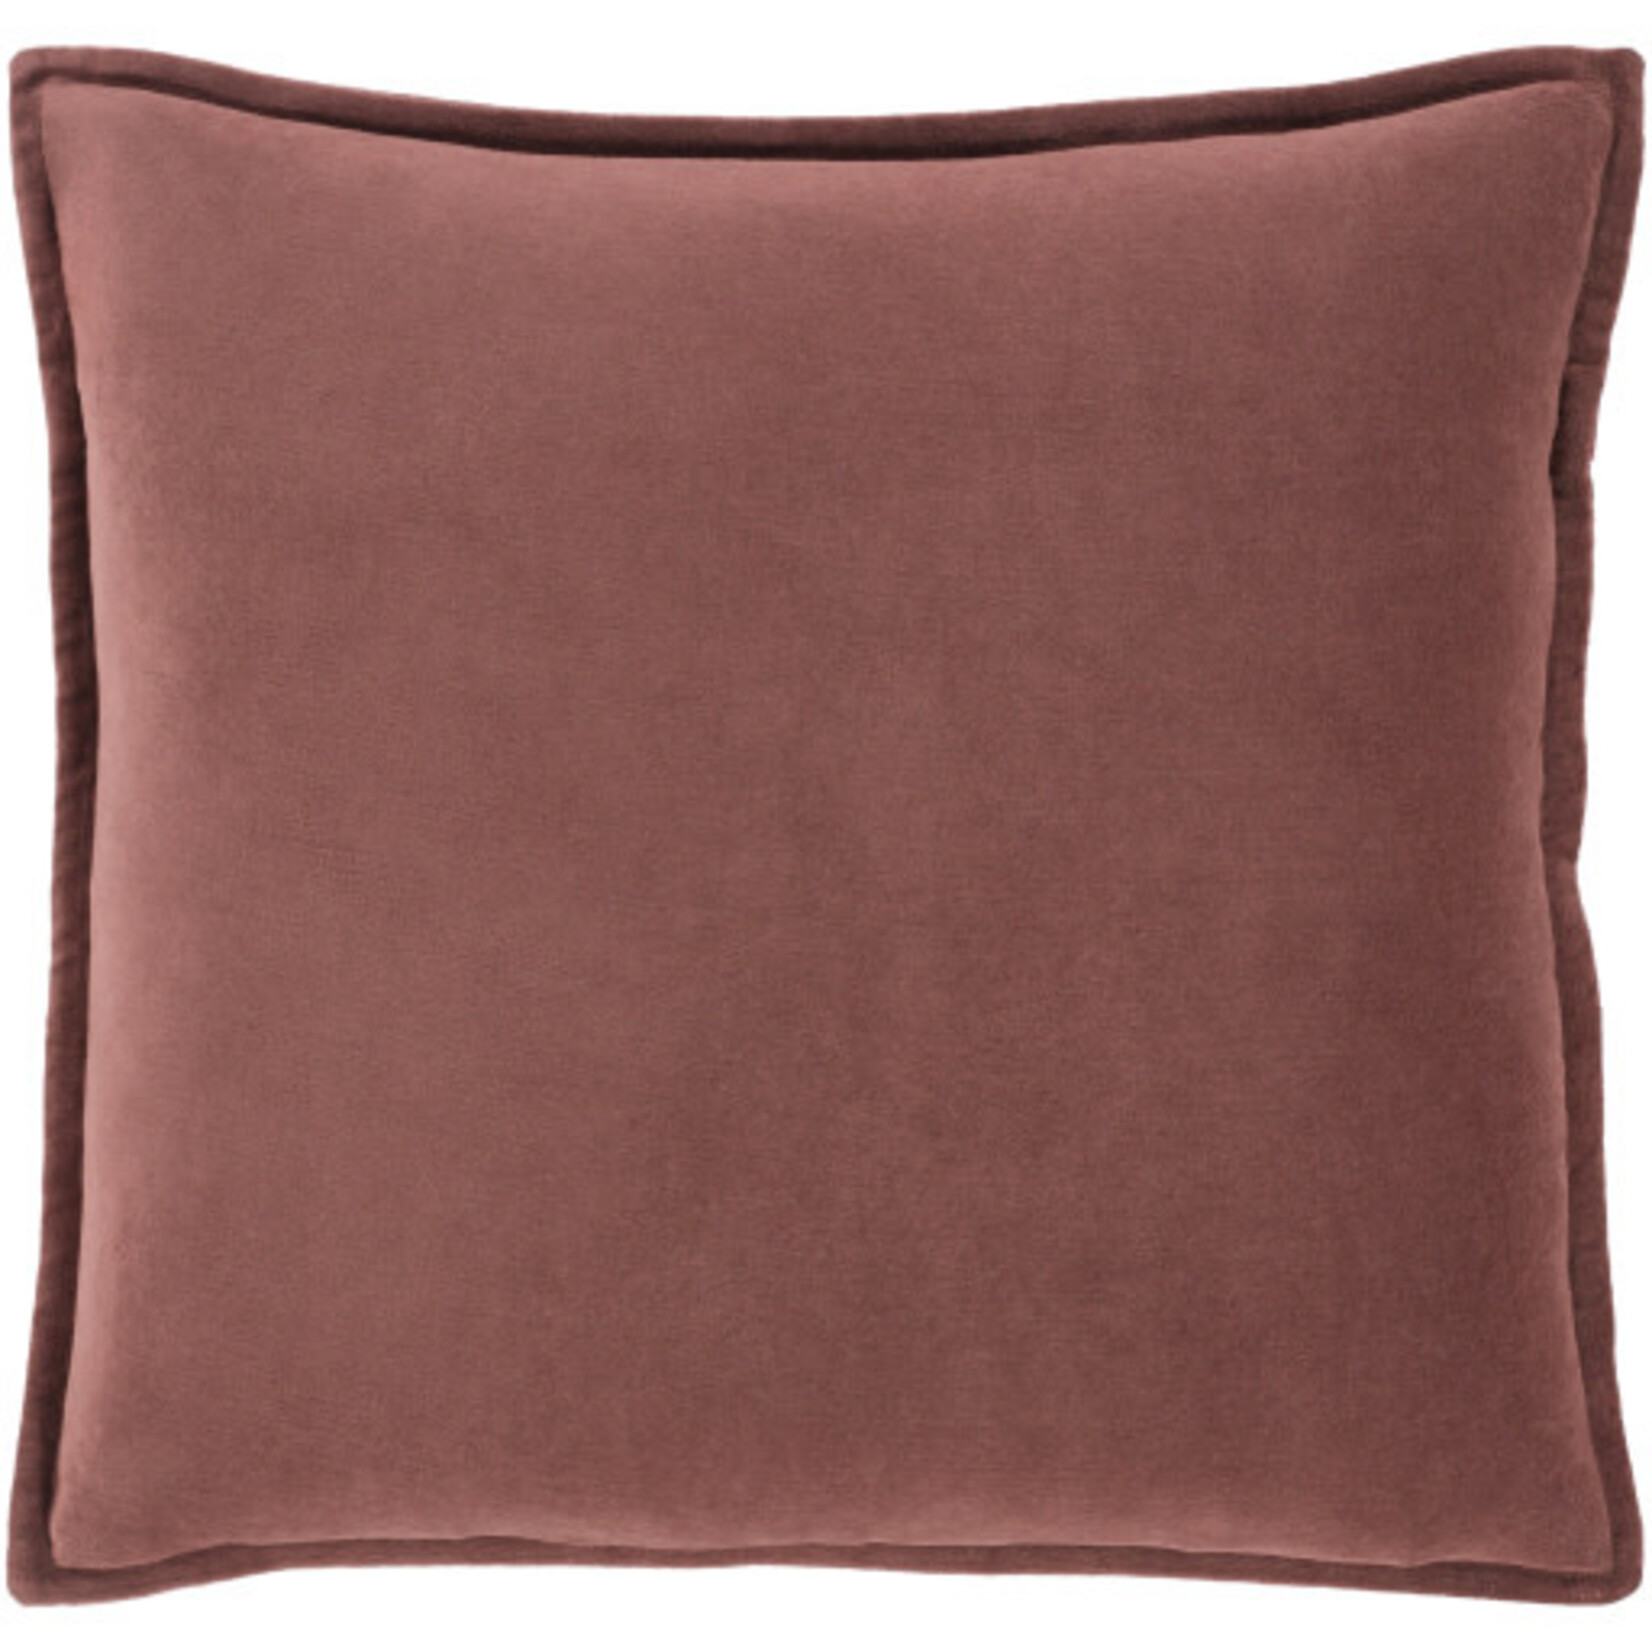 Surya CV030-2020P 20x20 Pillow